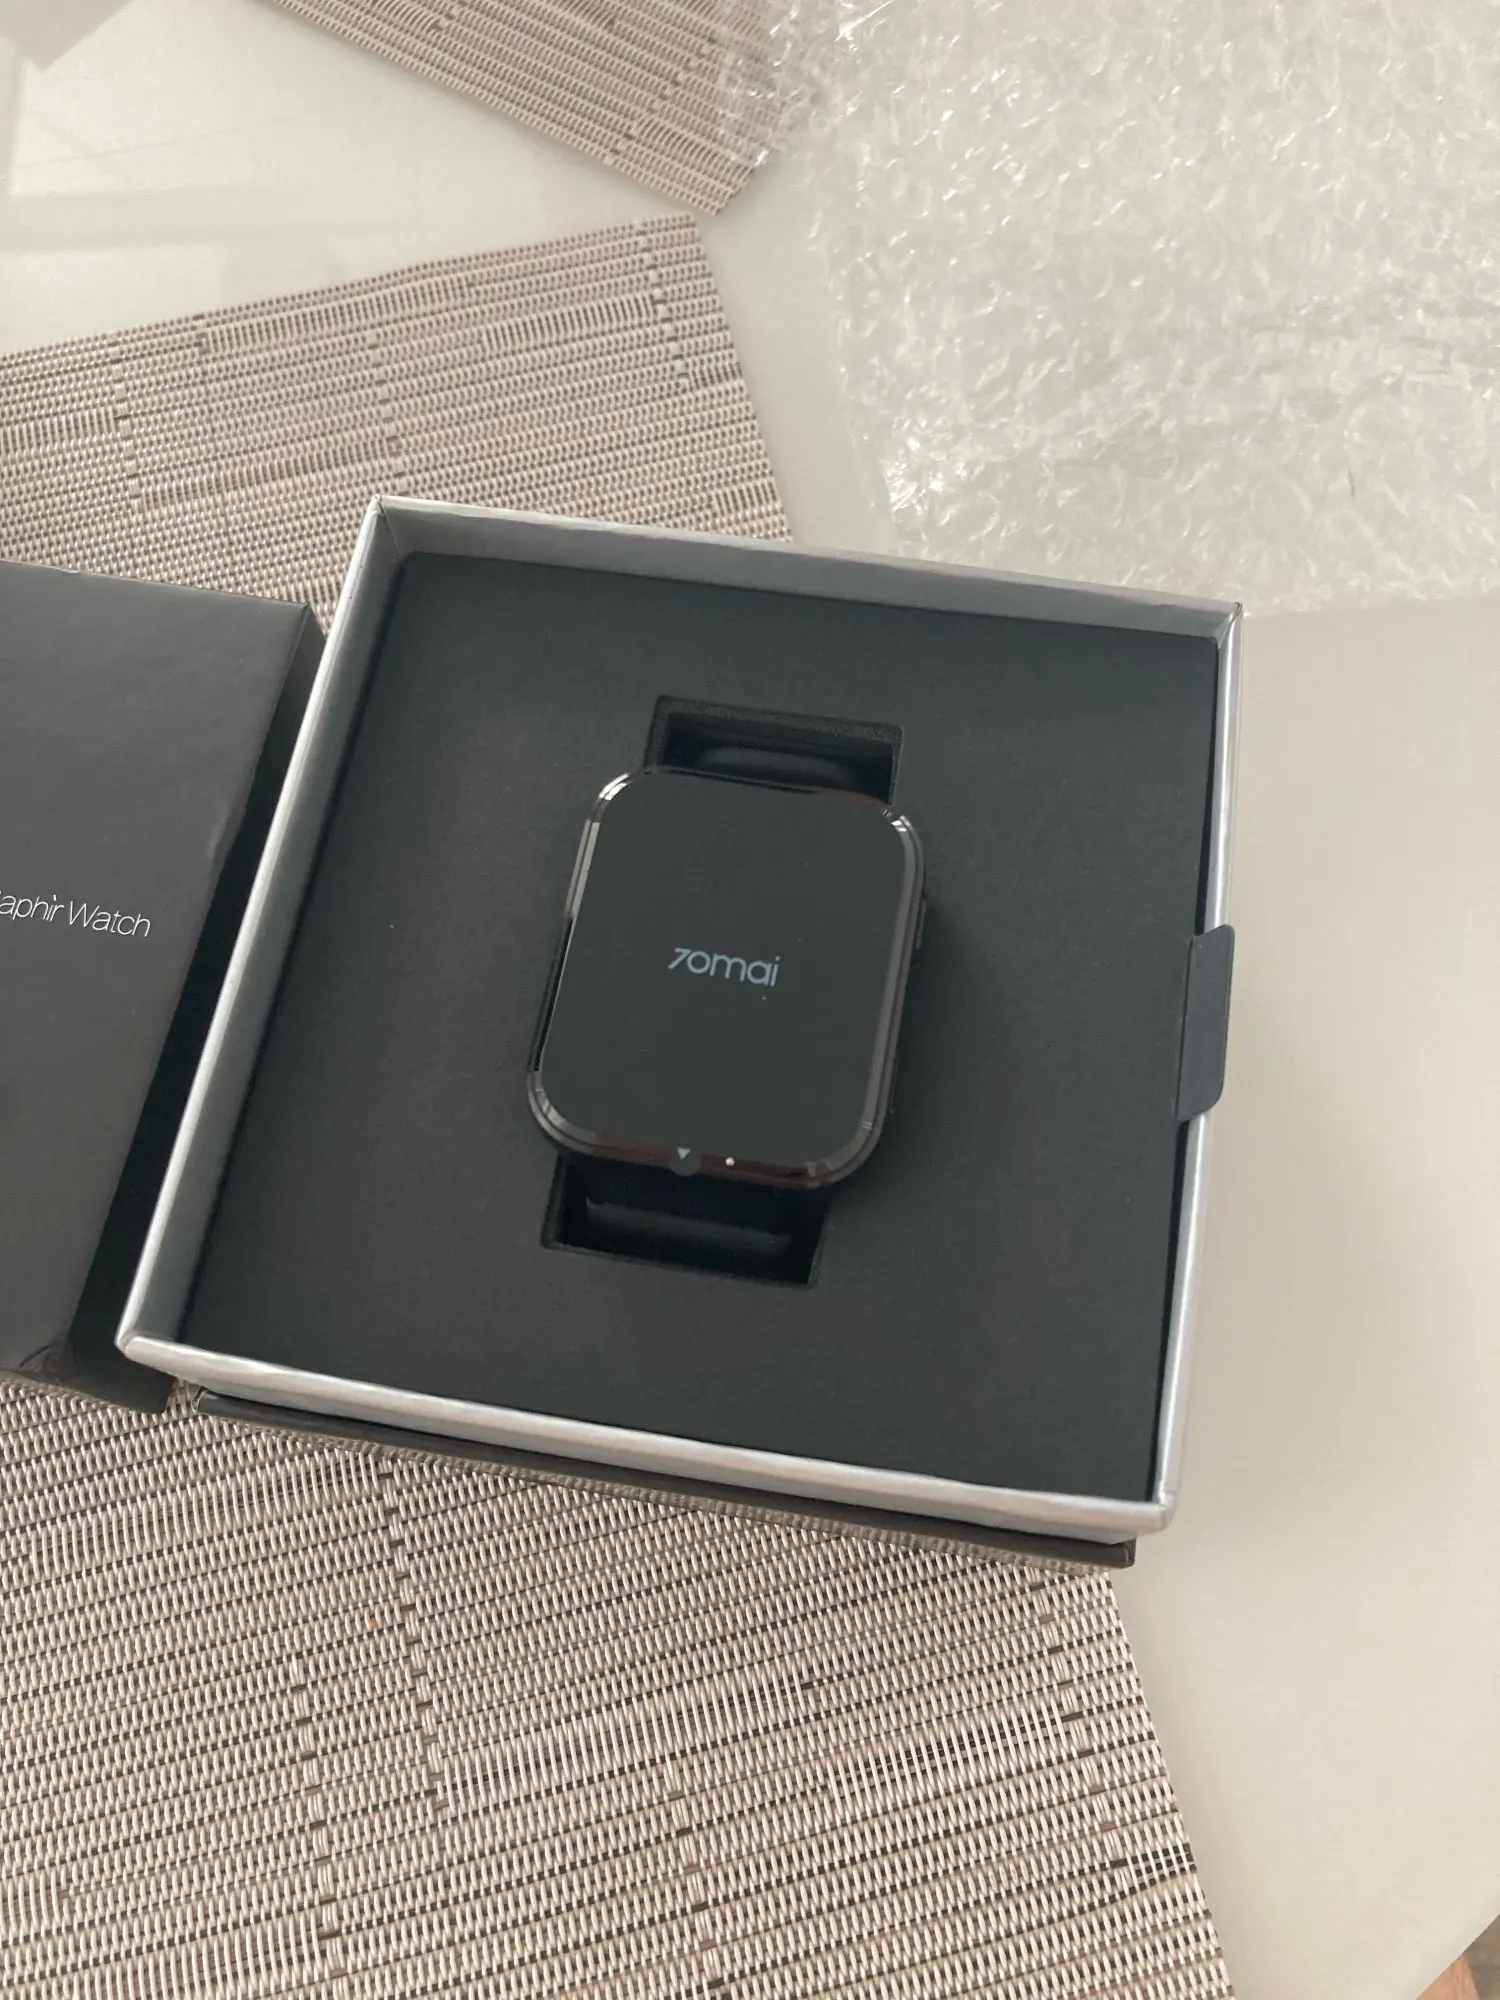 Xiaomi Saphir Watch Отзывы